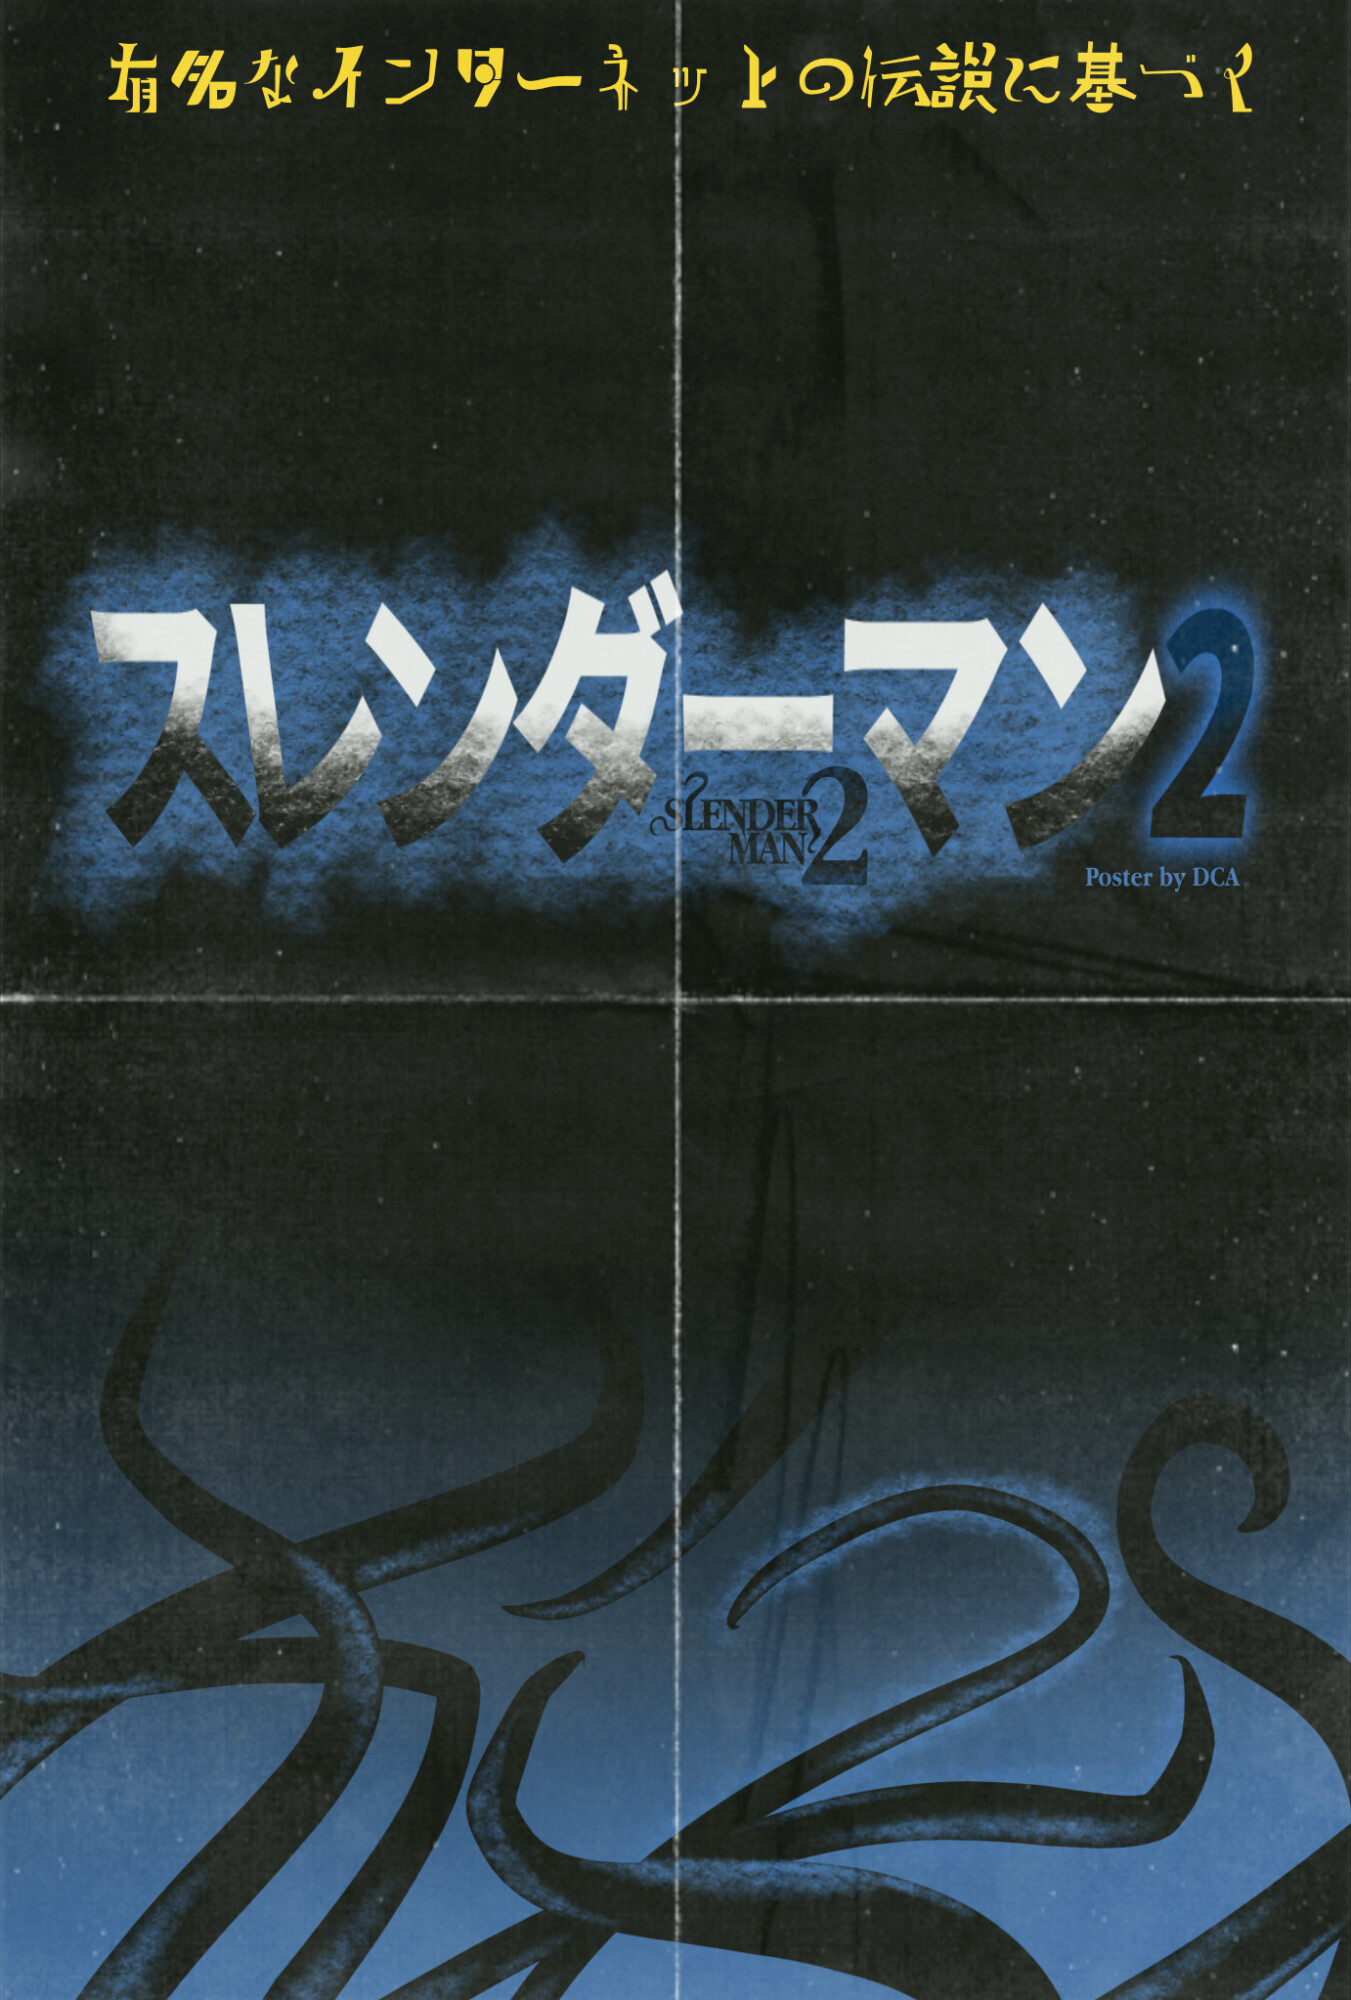 Slender Man 2 – Retro Japanese Concept Poster